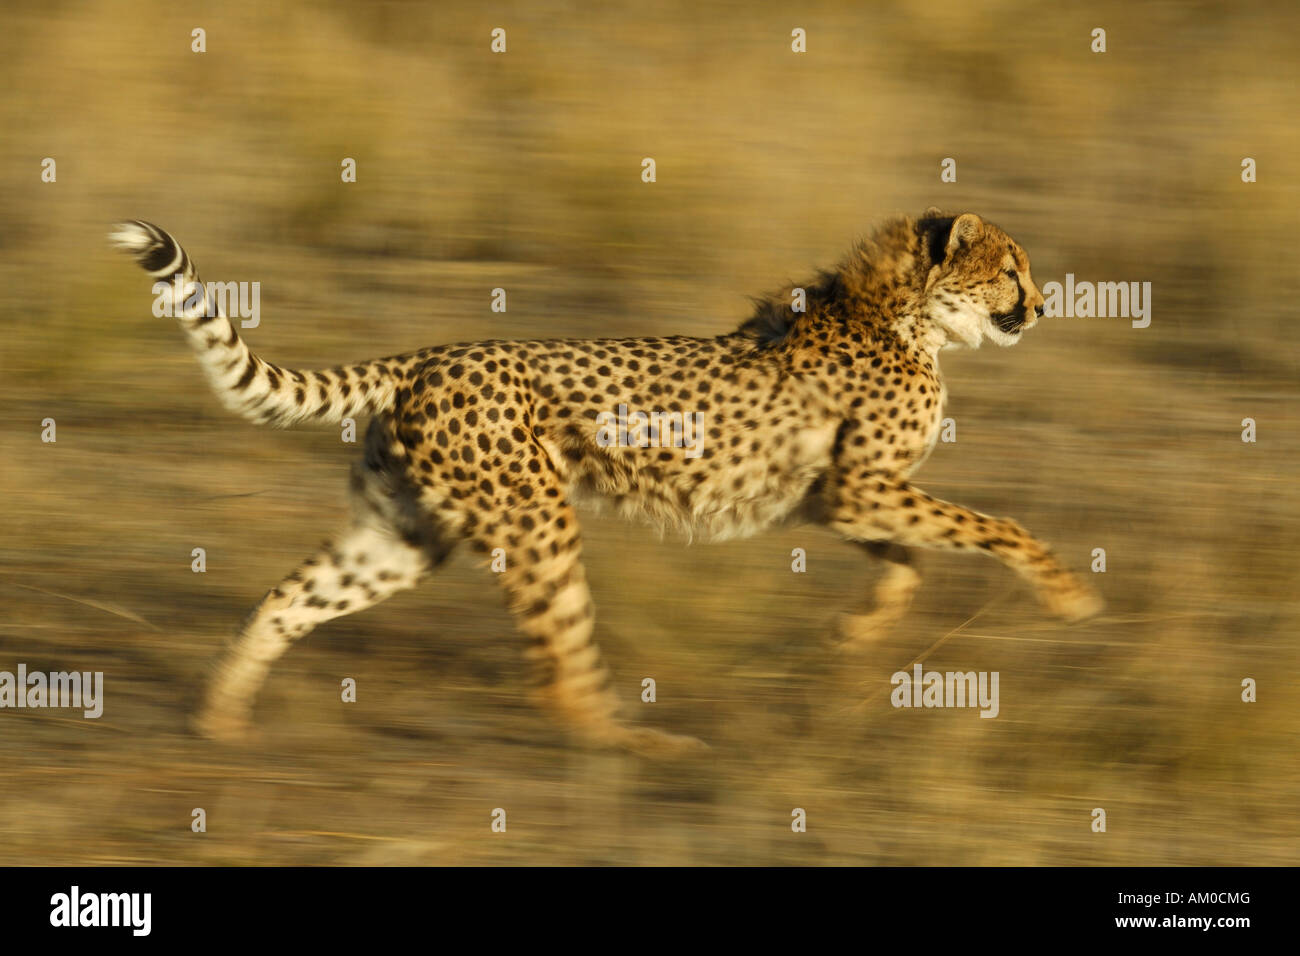 Cheetah (Acinonyx jubatus), running Stock Photo